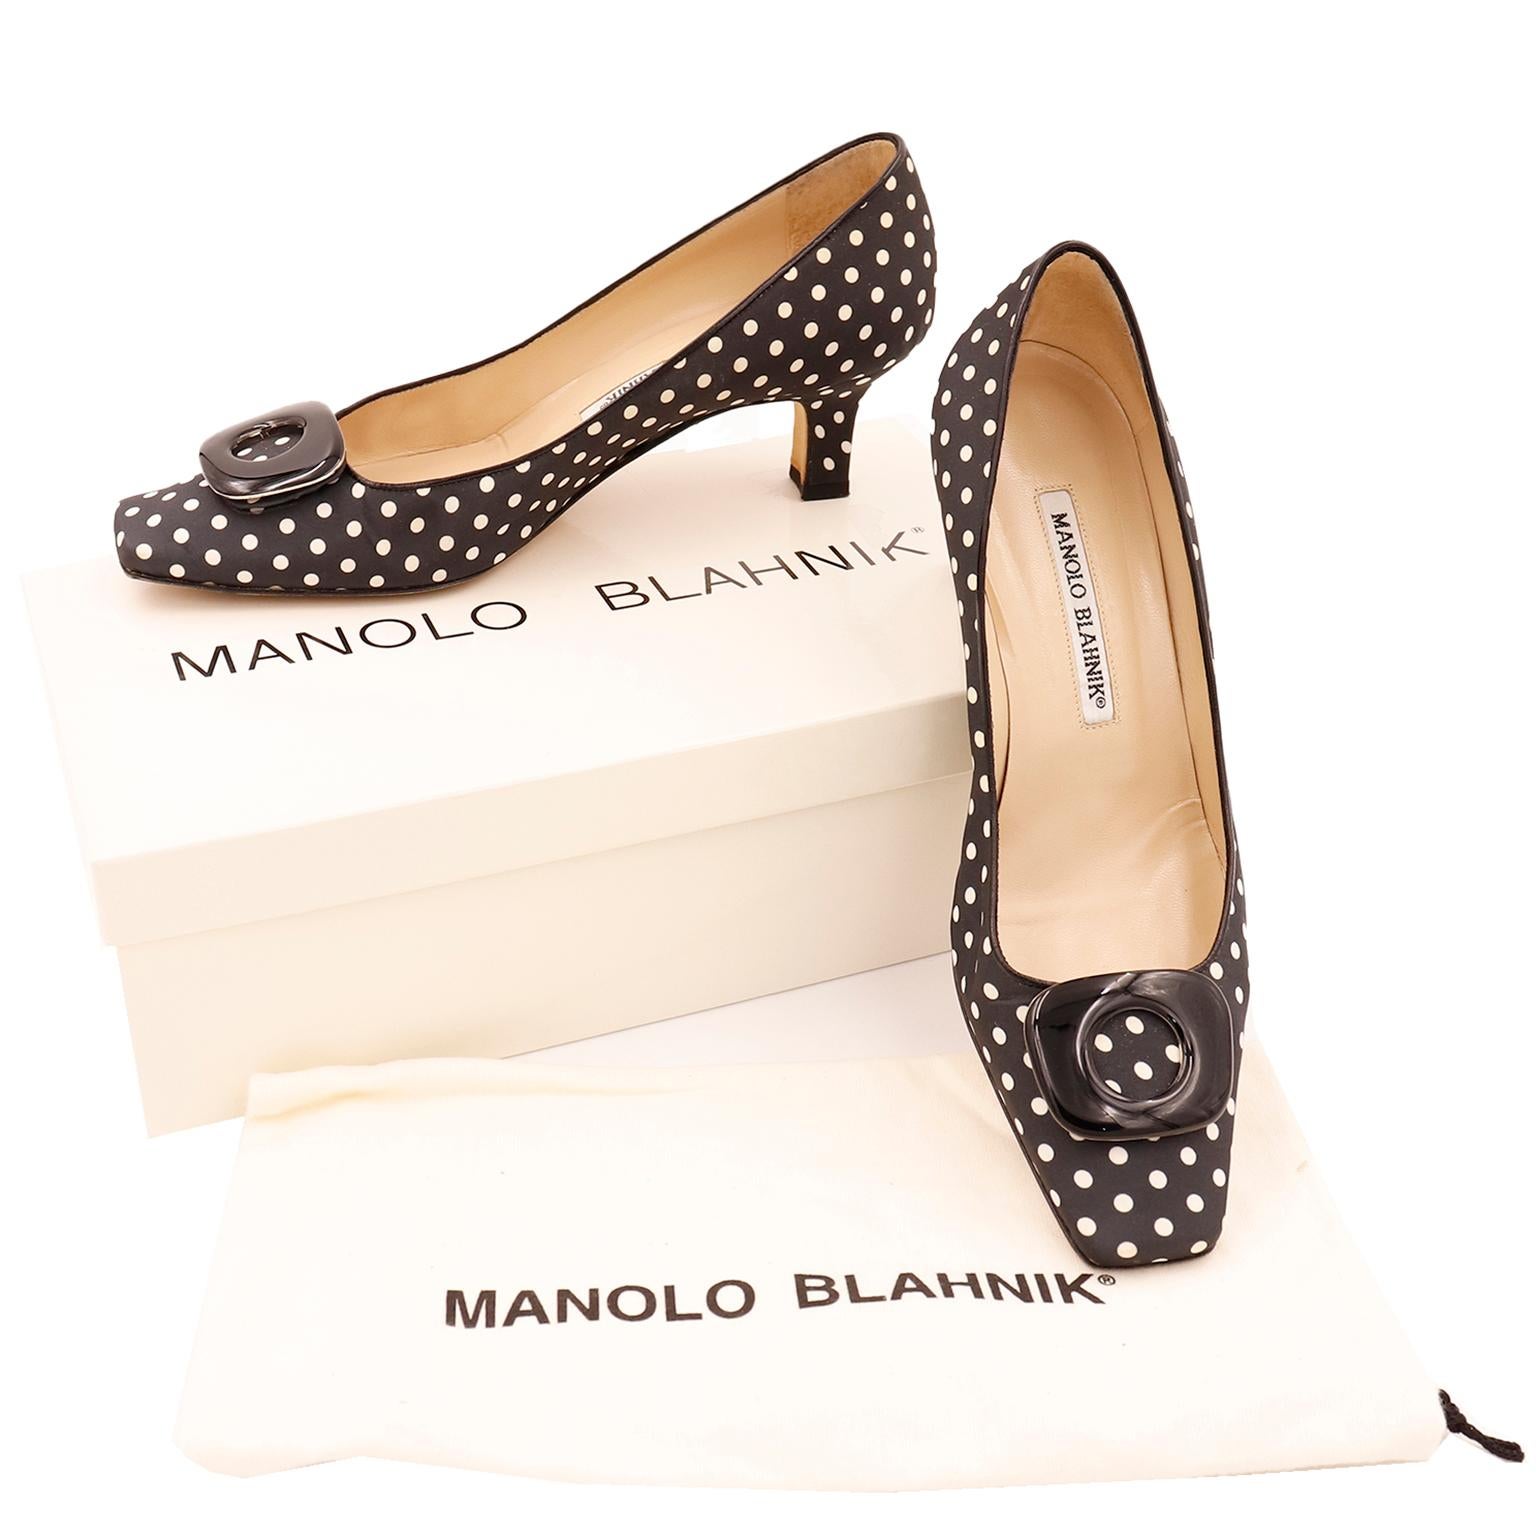 Ces chaussures Manolo Blahnik sont noires à pois blancs. Elles sont dotées d'une semelle intérieure en cuir, d'une bordure en cuir et d'un bout légèrement carré. Ces superbes chaussures ont un talon bas et des boucles noires. Ils sont accompagnés de